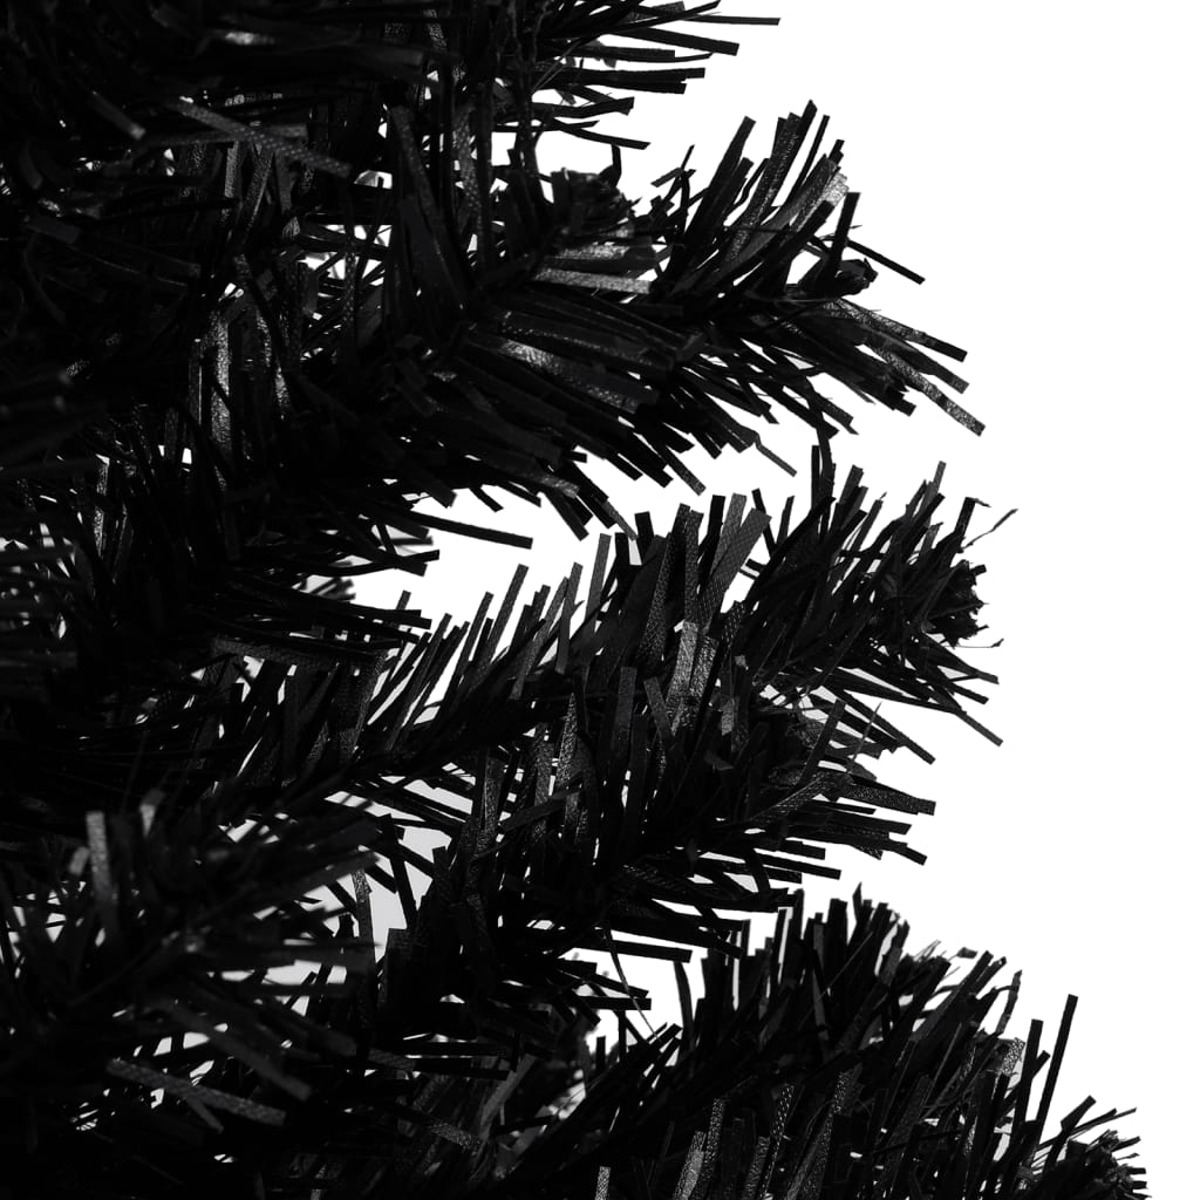 Weihnachtsbaum 3077588 VIDAXL